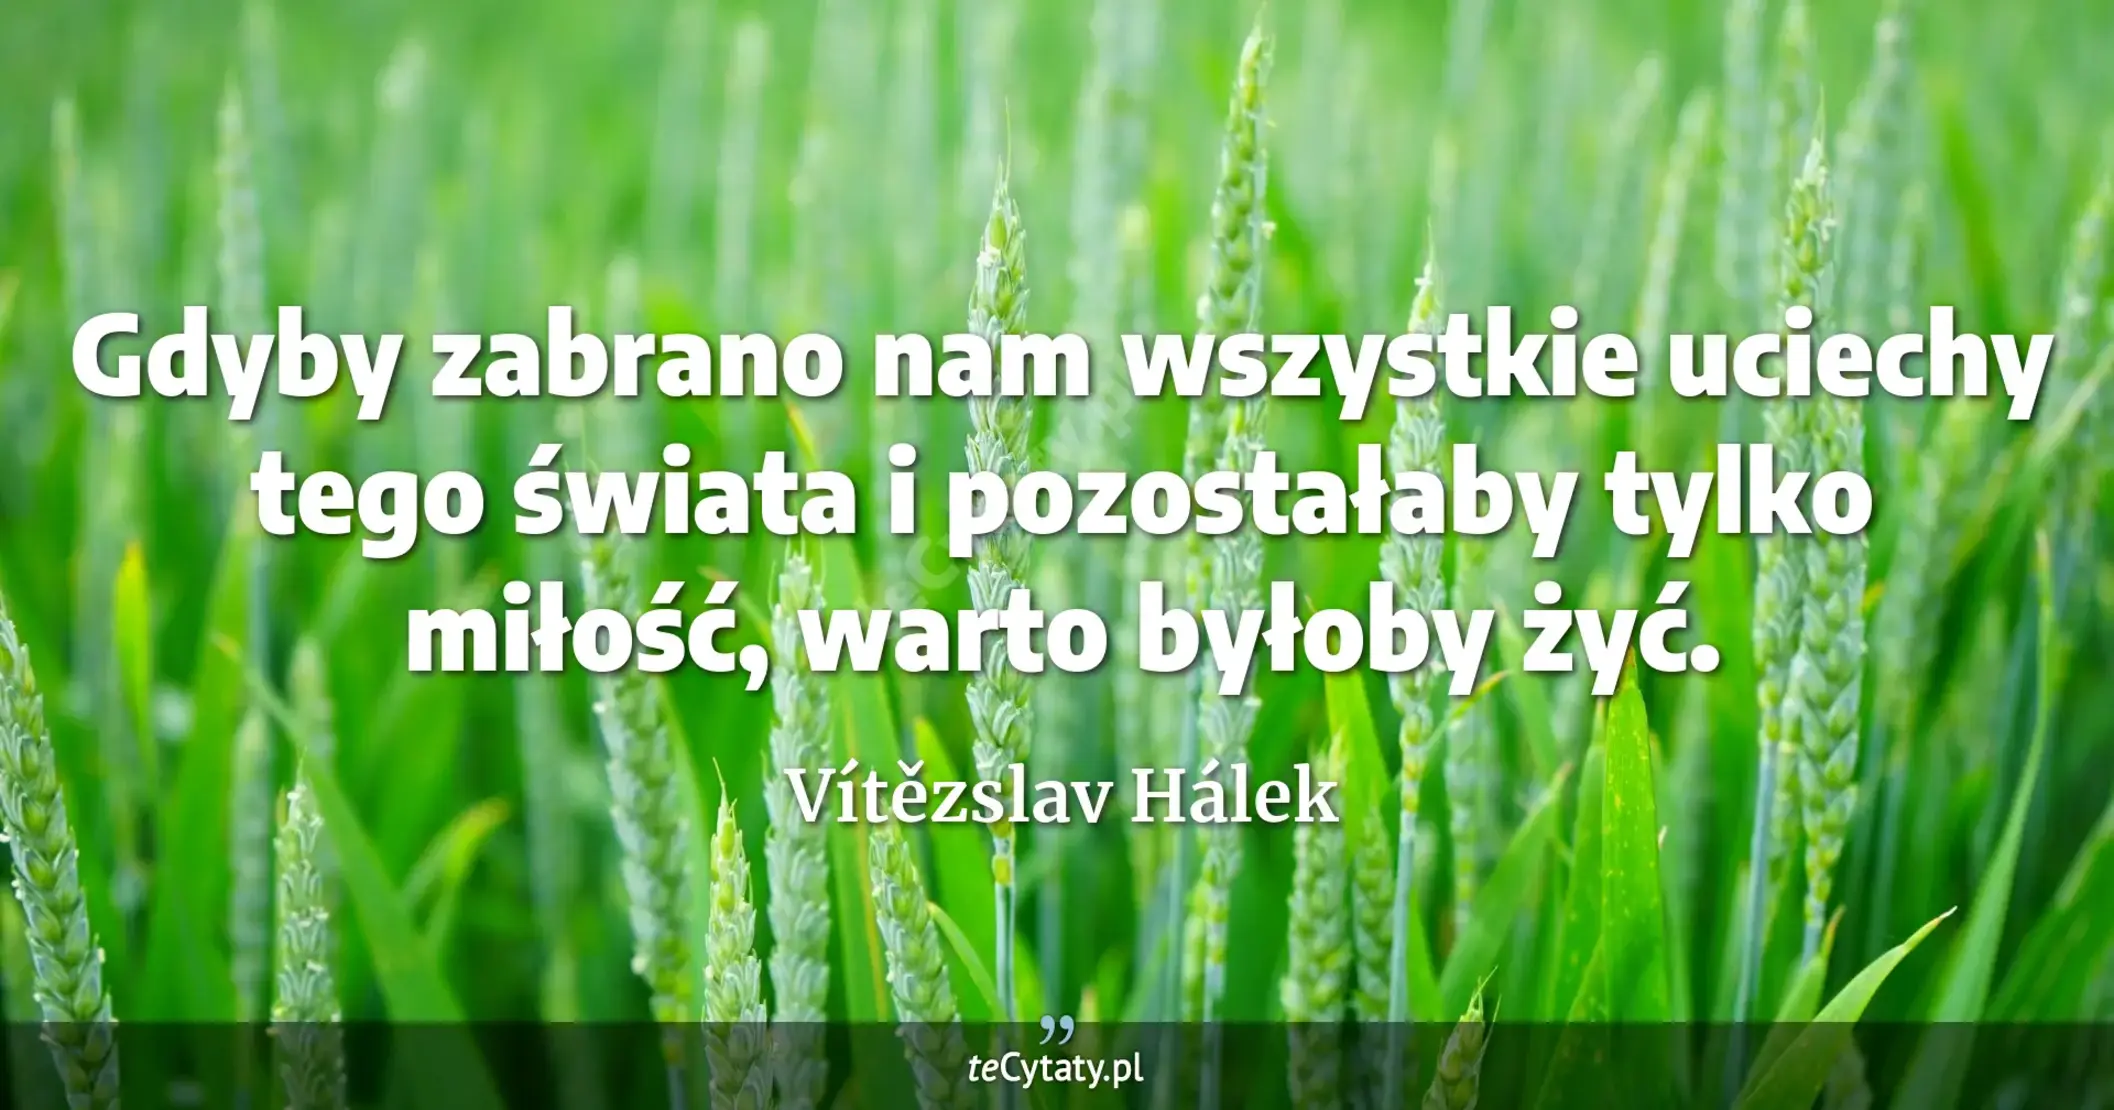 Gdyby zabrano nam wszystkie uciechy tego świata i pozostałaby tylko miłość, warto byłoby żyć. - Vítězslav Hálek